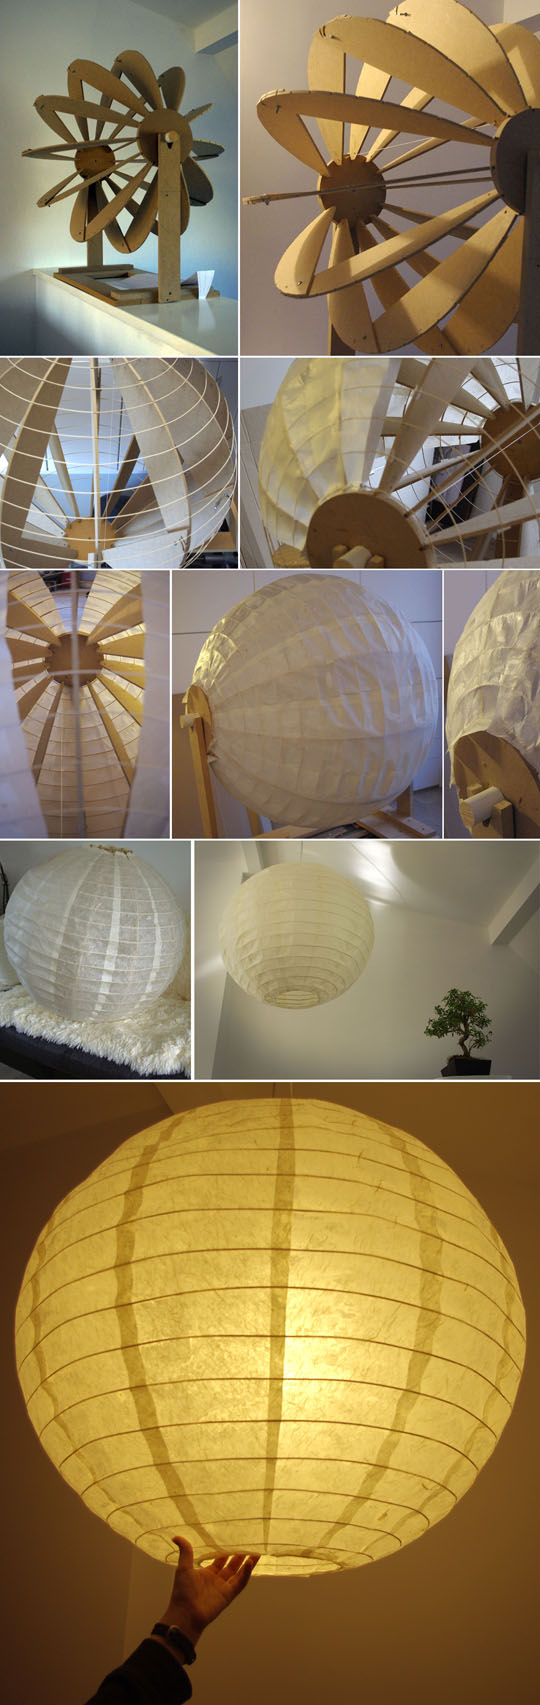 Lampe en papier fabriquée par Cali et Chex en s'inspirant de Noguchi